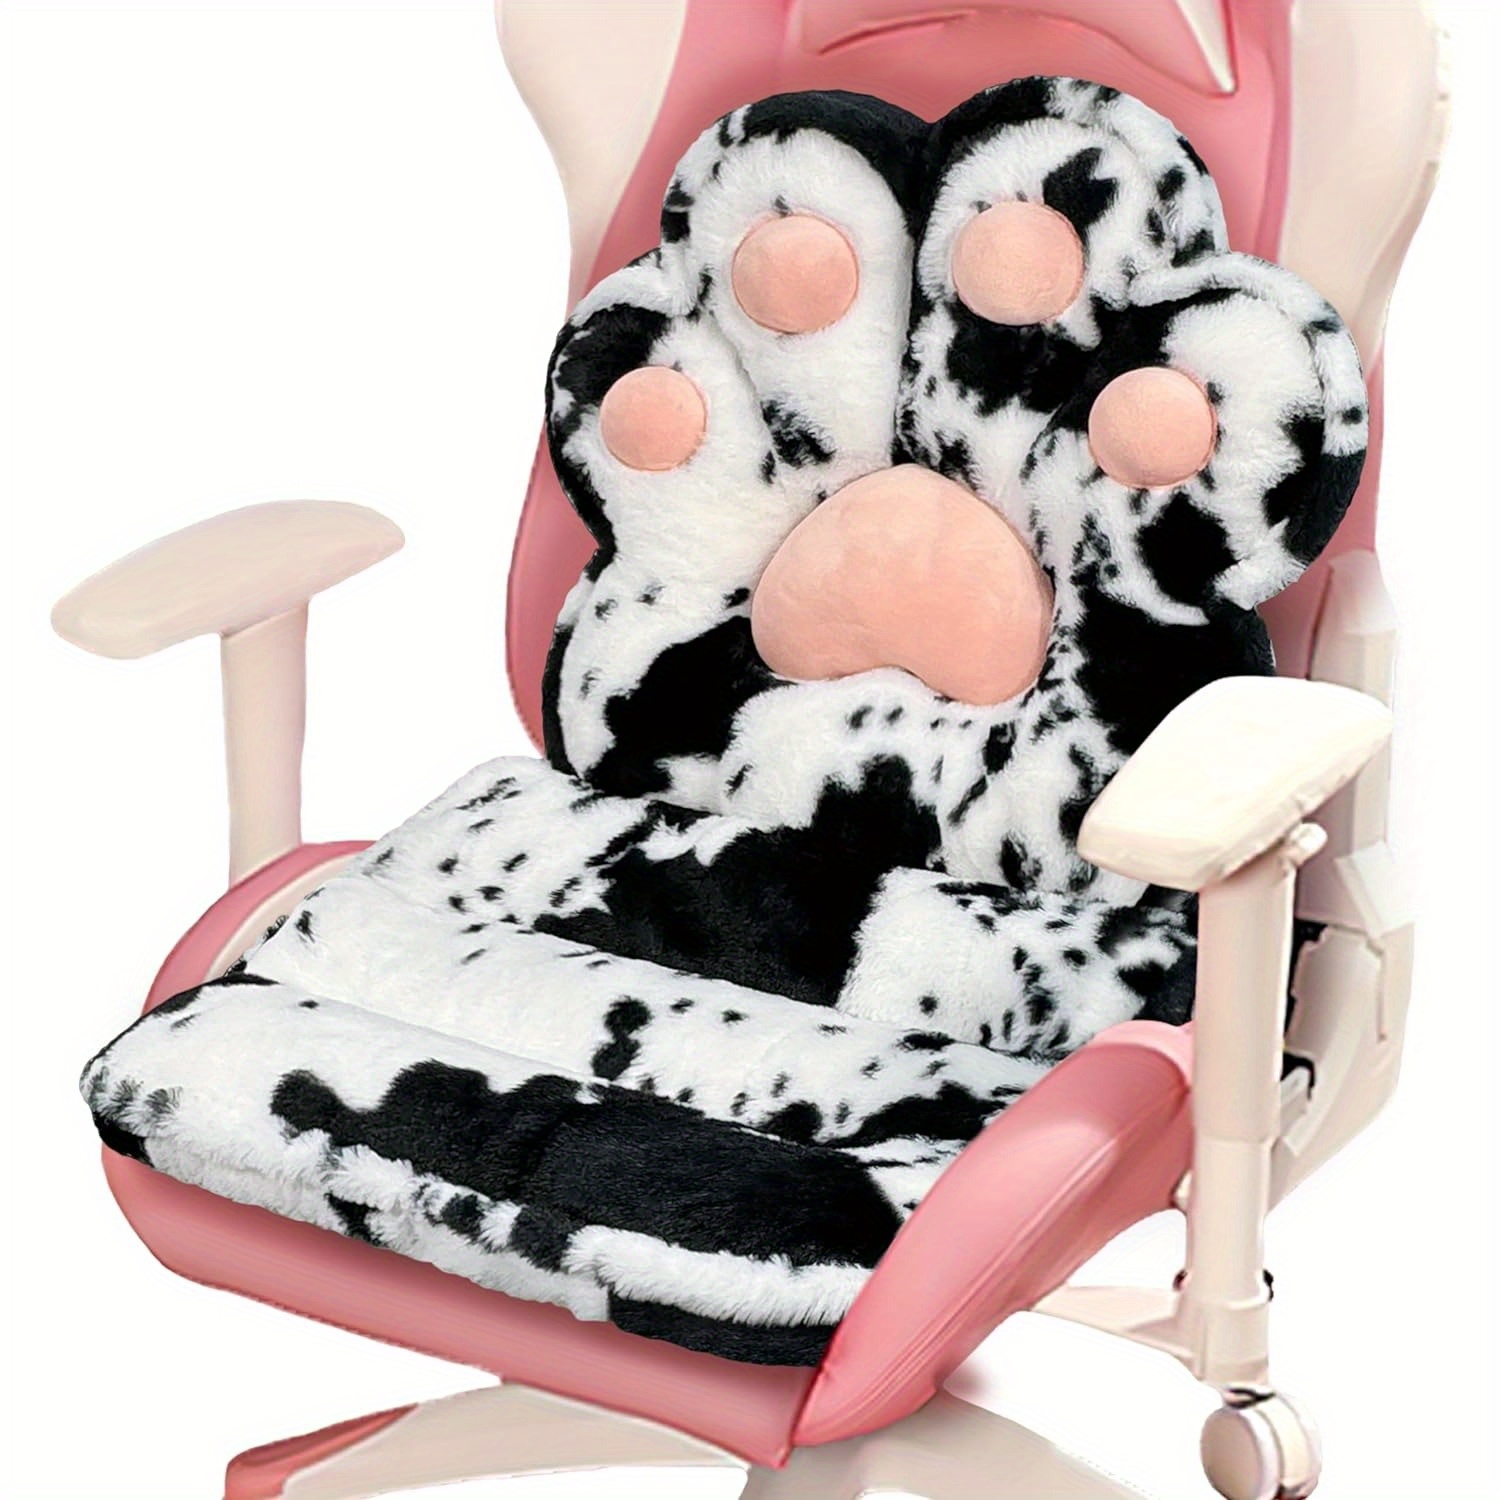 

L-shape Cat Paw Cushion, Soft Chair Pillow Kawaii Chair Cushions, Faux Rabbit Fur Gaming Chair Cushion For Gifts, Comfy Plush Floor Seat For Room Decor, Office Chair Cushion Cute